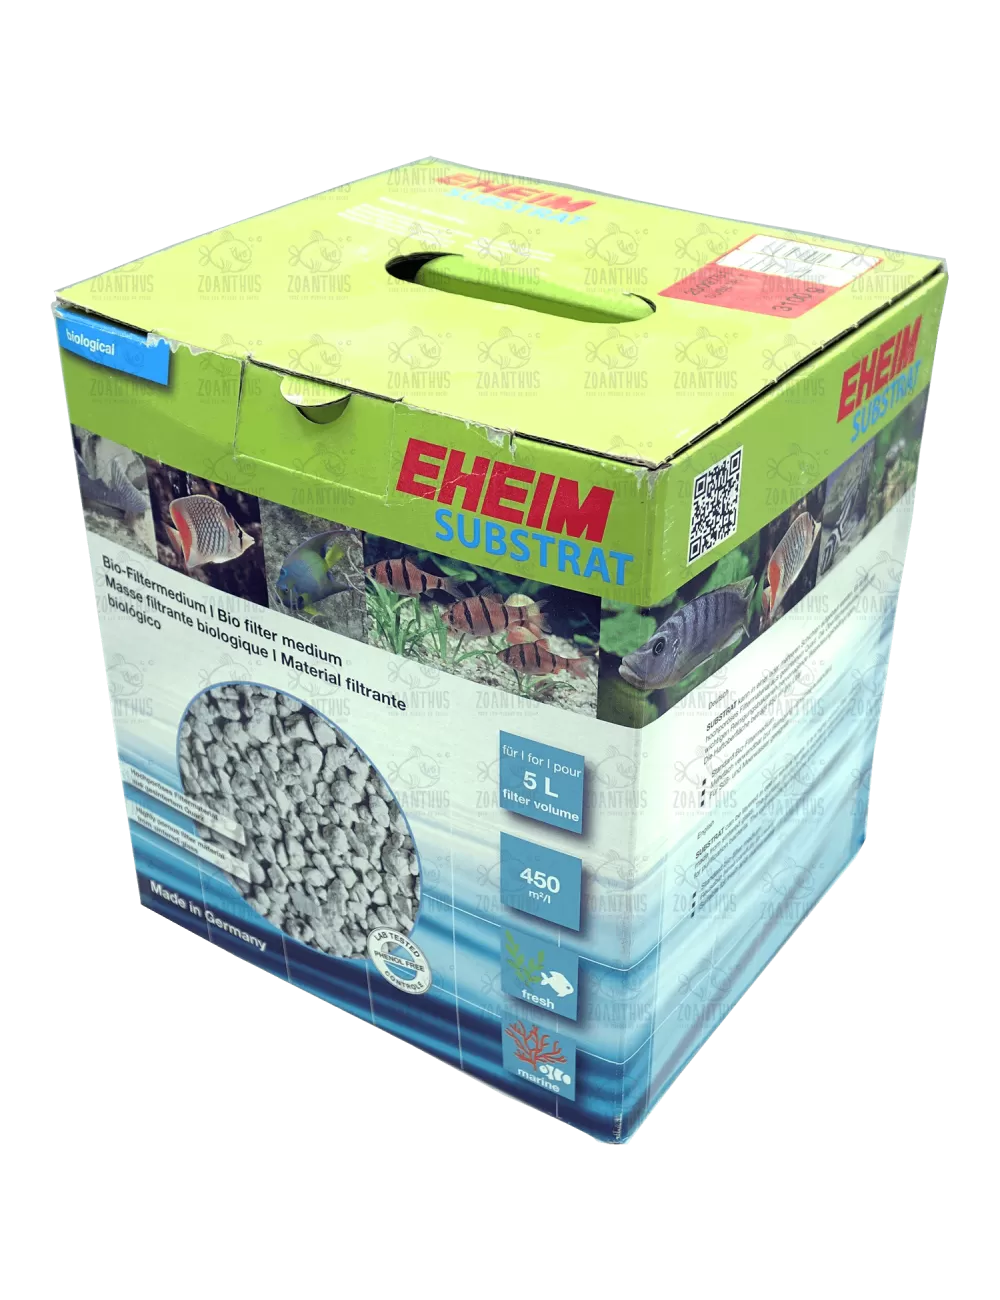 EHEIM - SUBSTRAT - 5l - Matériau filtrant biologique poreux